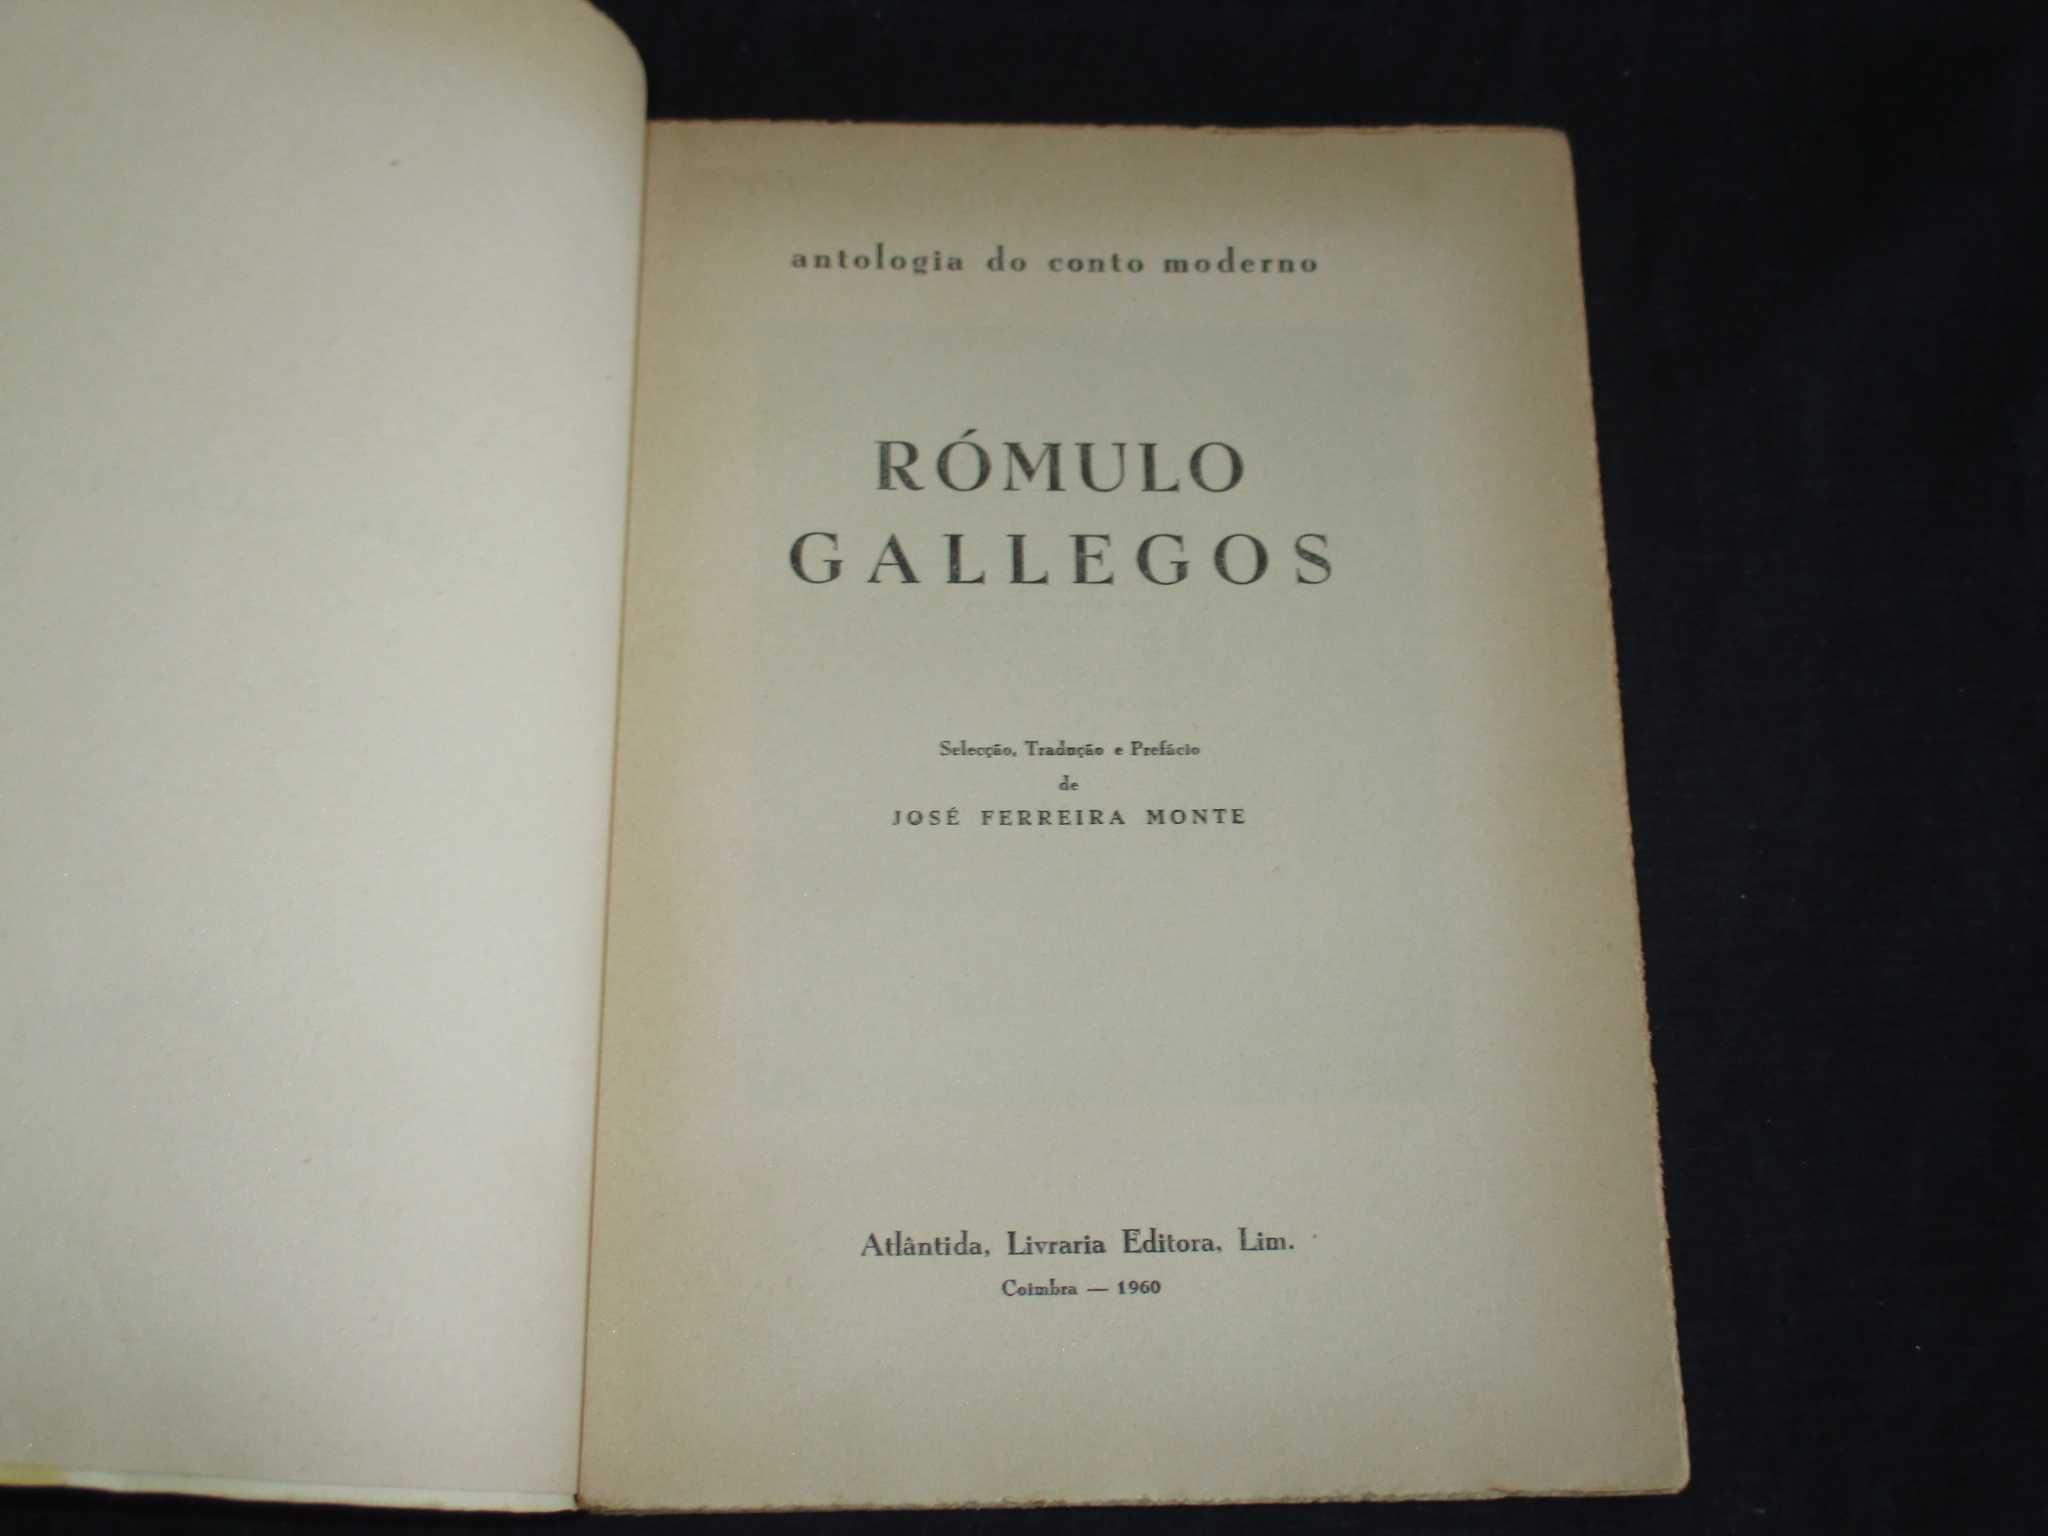 Livro Rómulo Gallegos Antologia do Conto Moderno